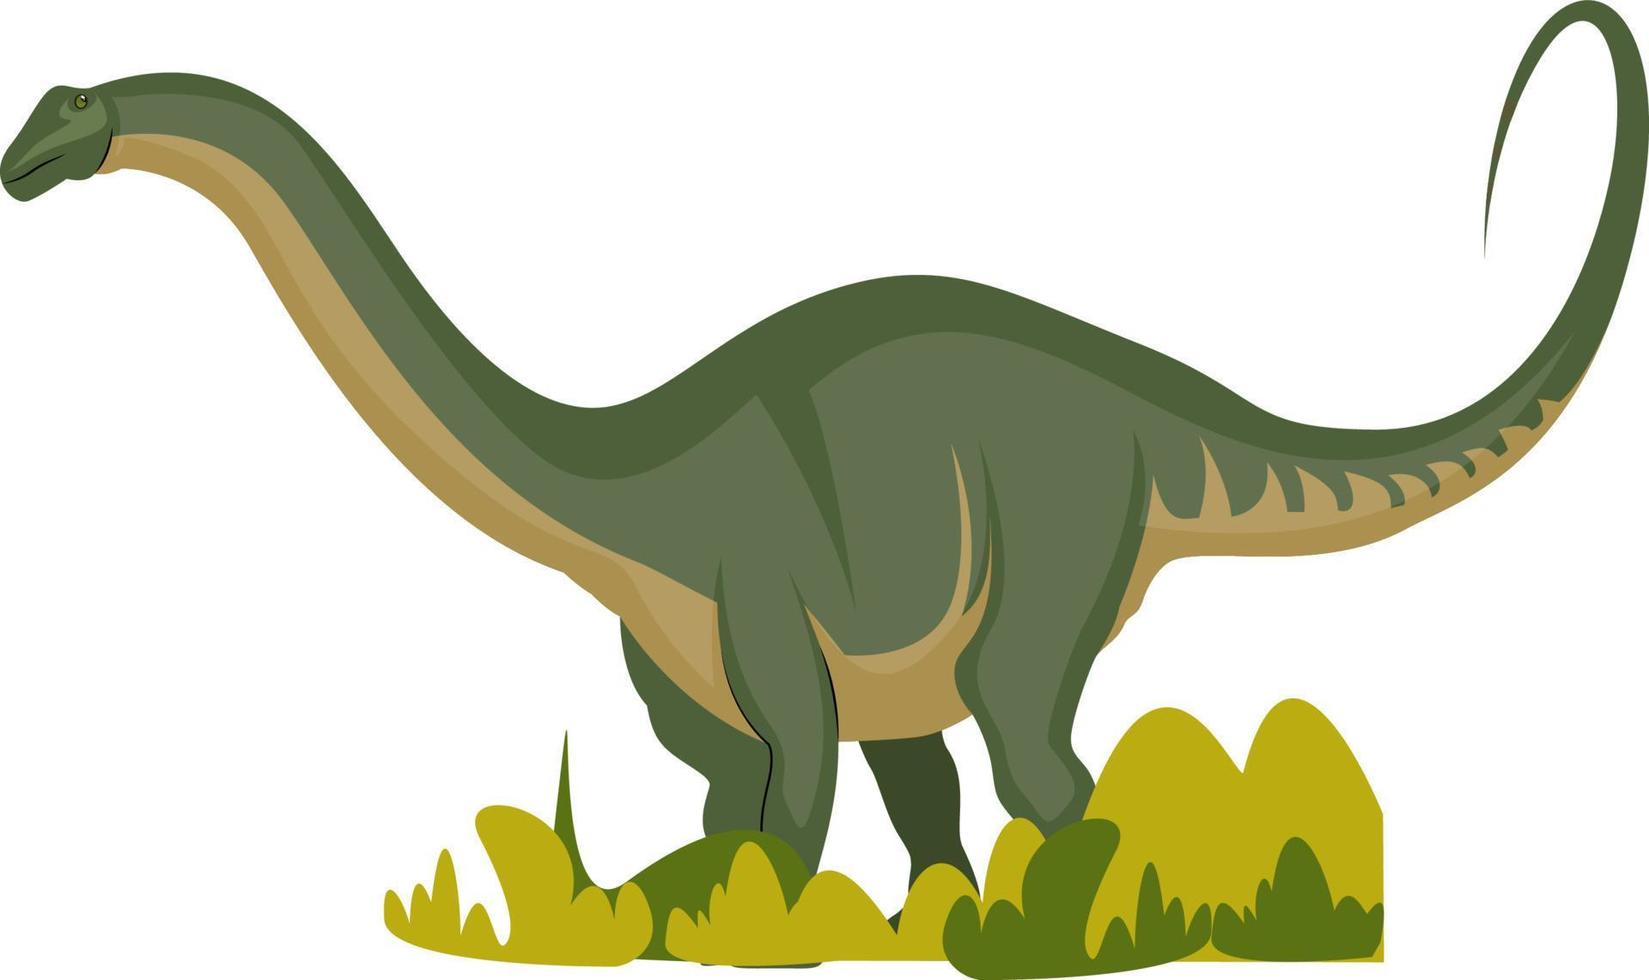 apatosaurus, illustration, vektor på vit bakgrund.